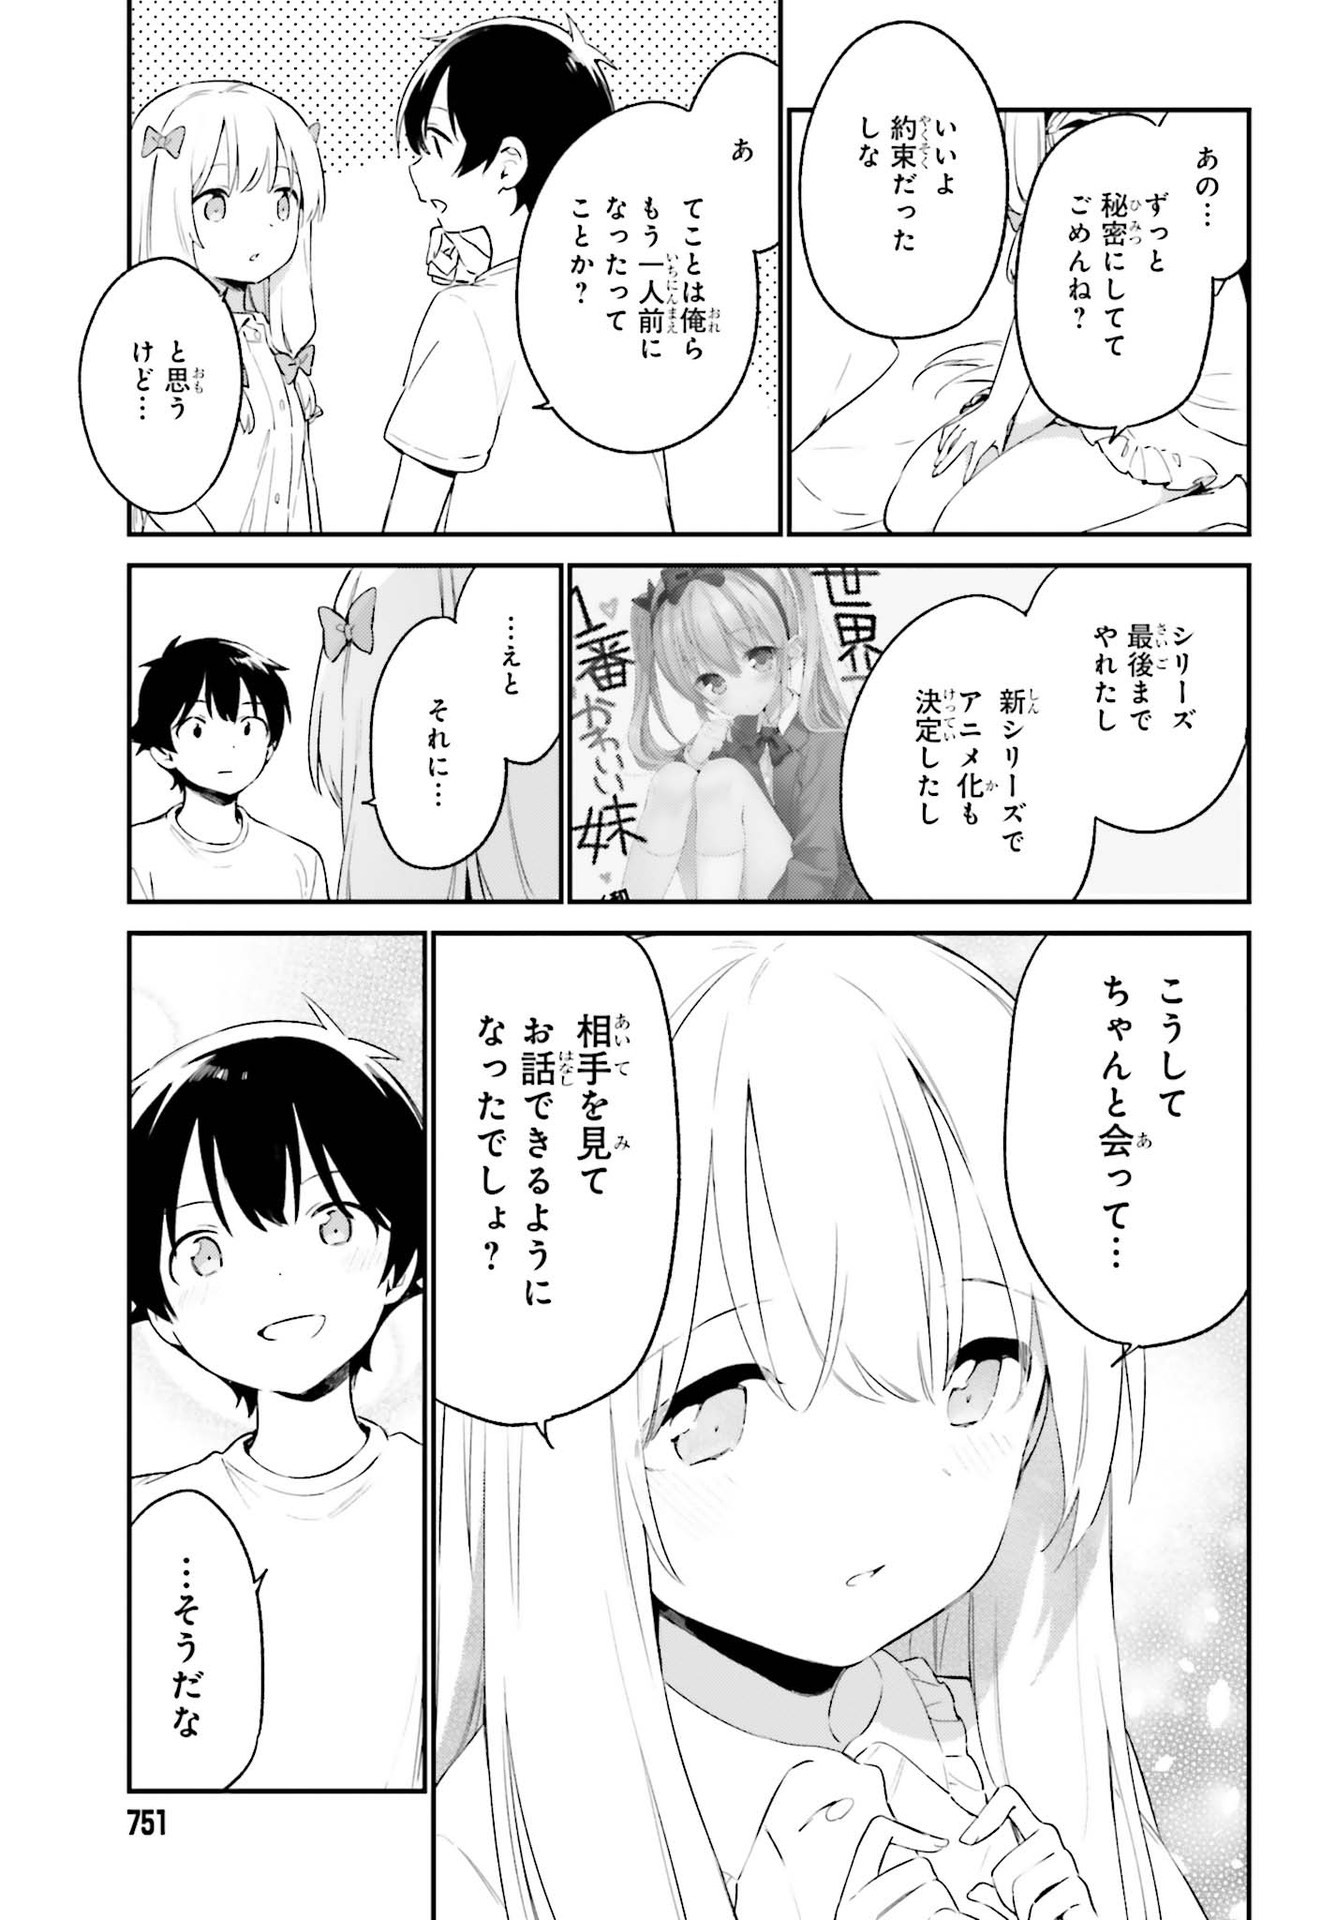 Ero Manga Sensei - Chapter 77 - Page 37